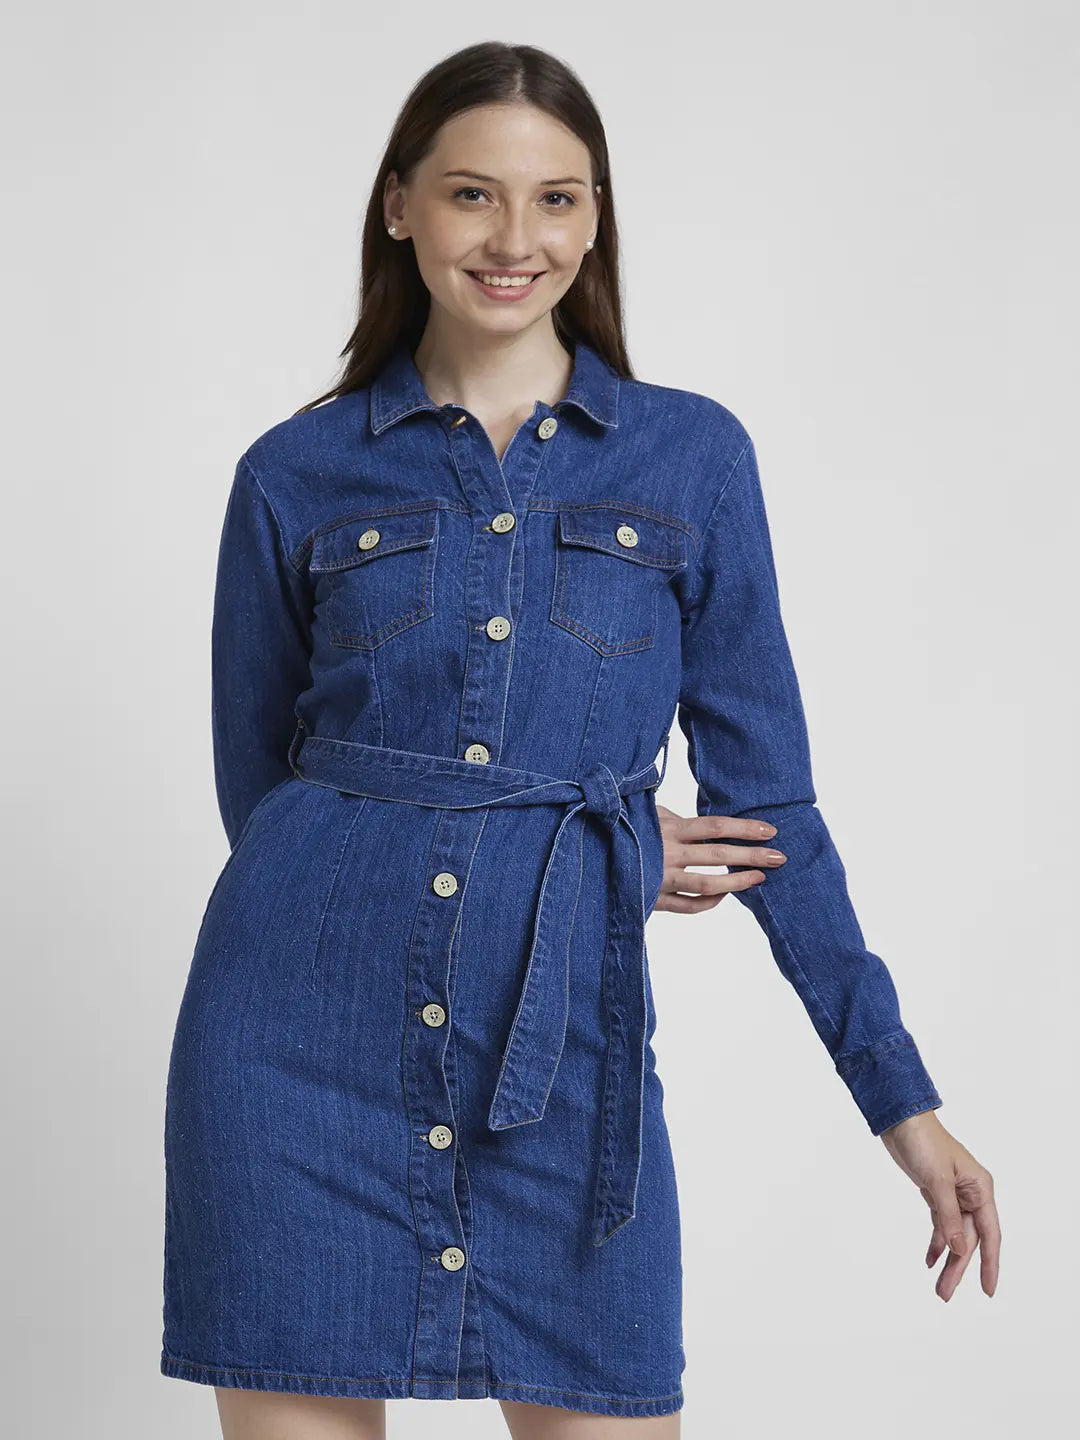 Basic Editions Denim Shirt Women's Medium America Button Up Long Sleeve  Pockets | Womens denim shirt, Clothes design, Denim shirt